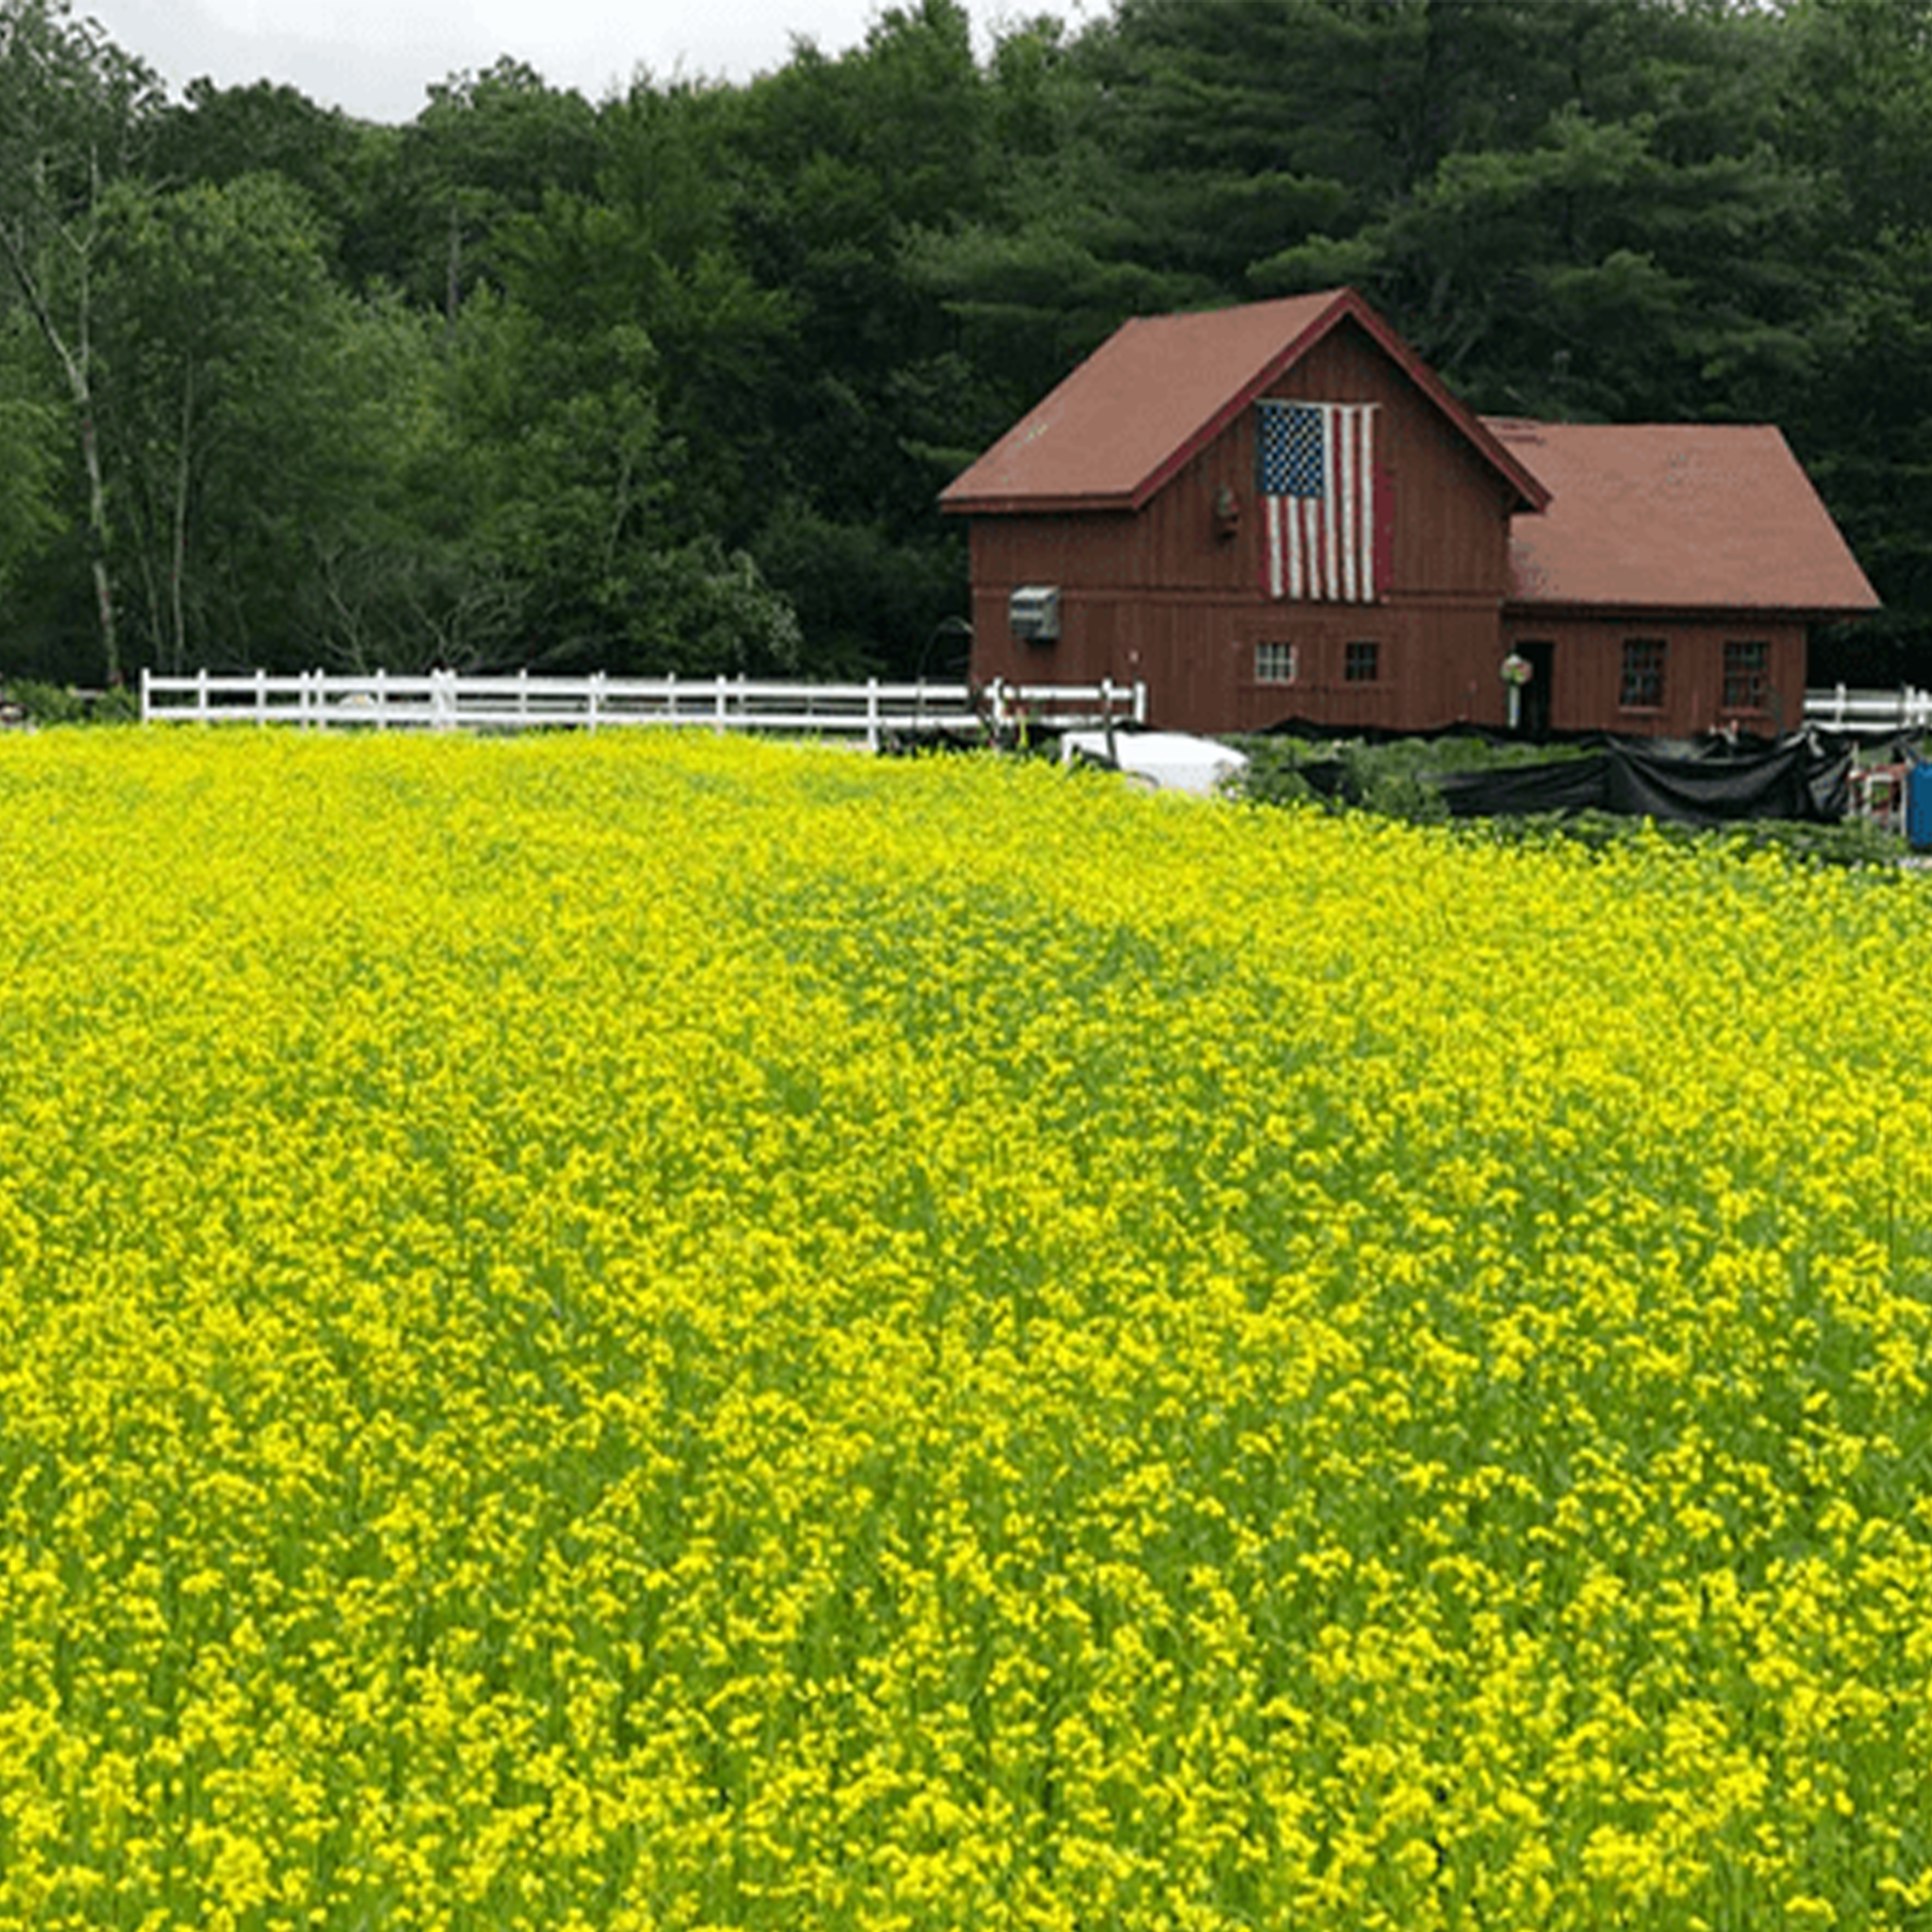 Field of Mustard growing